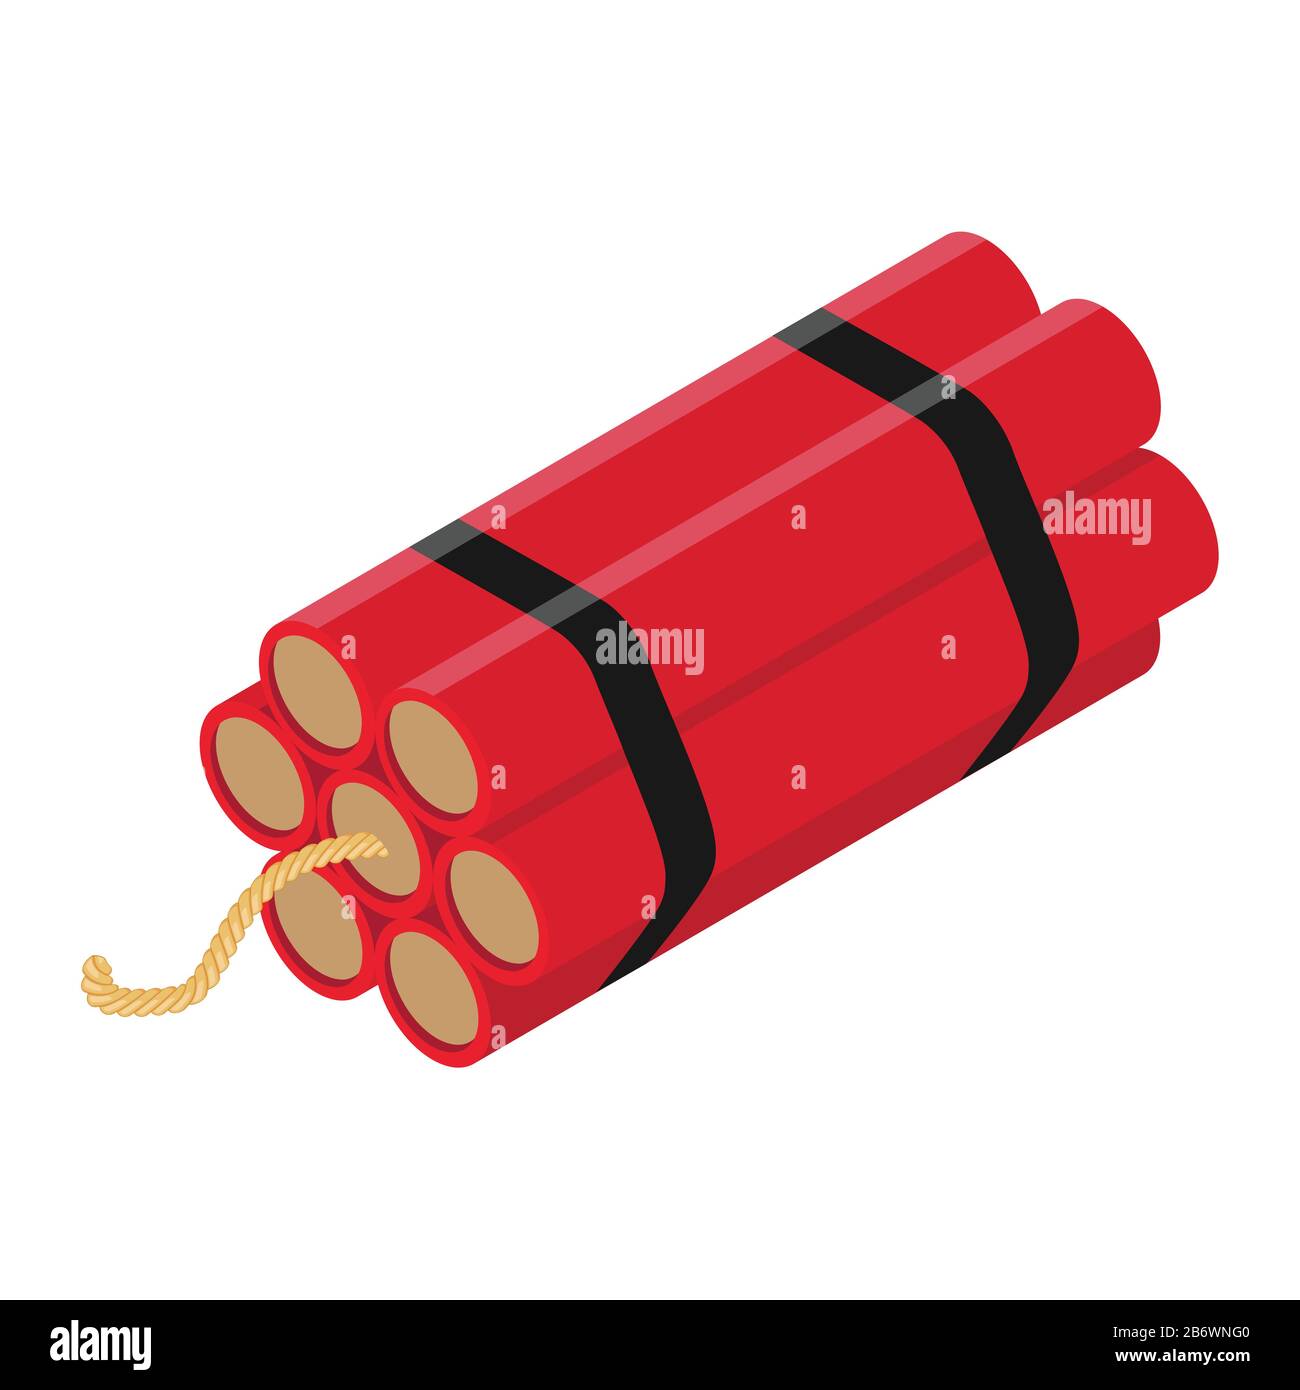 Realistica Dettagliata Isometrica Red Detonate Dynamite Bomb Stick O Time  Bomb Isolato Su Sfondo Bianco. Illustrazione del vettore Immagine e  Vettoriale - Alamy